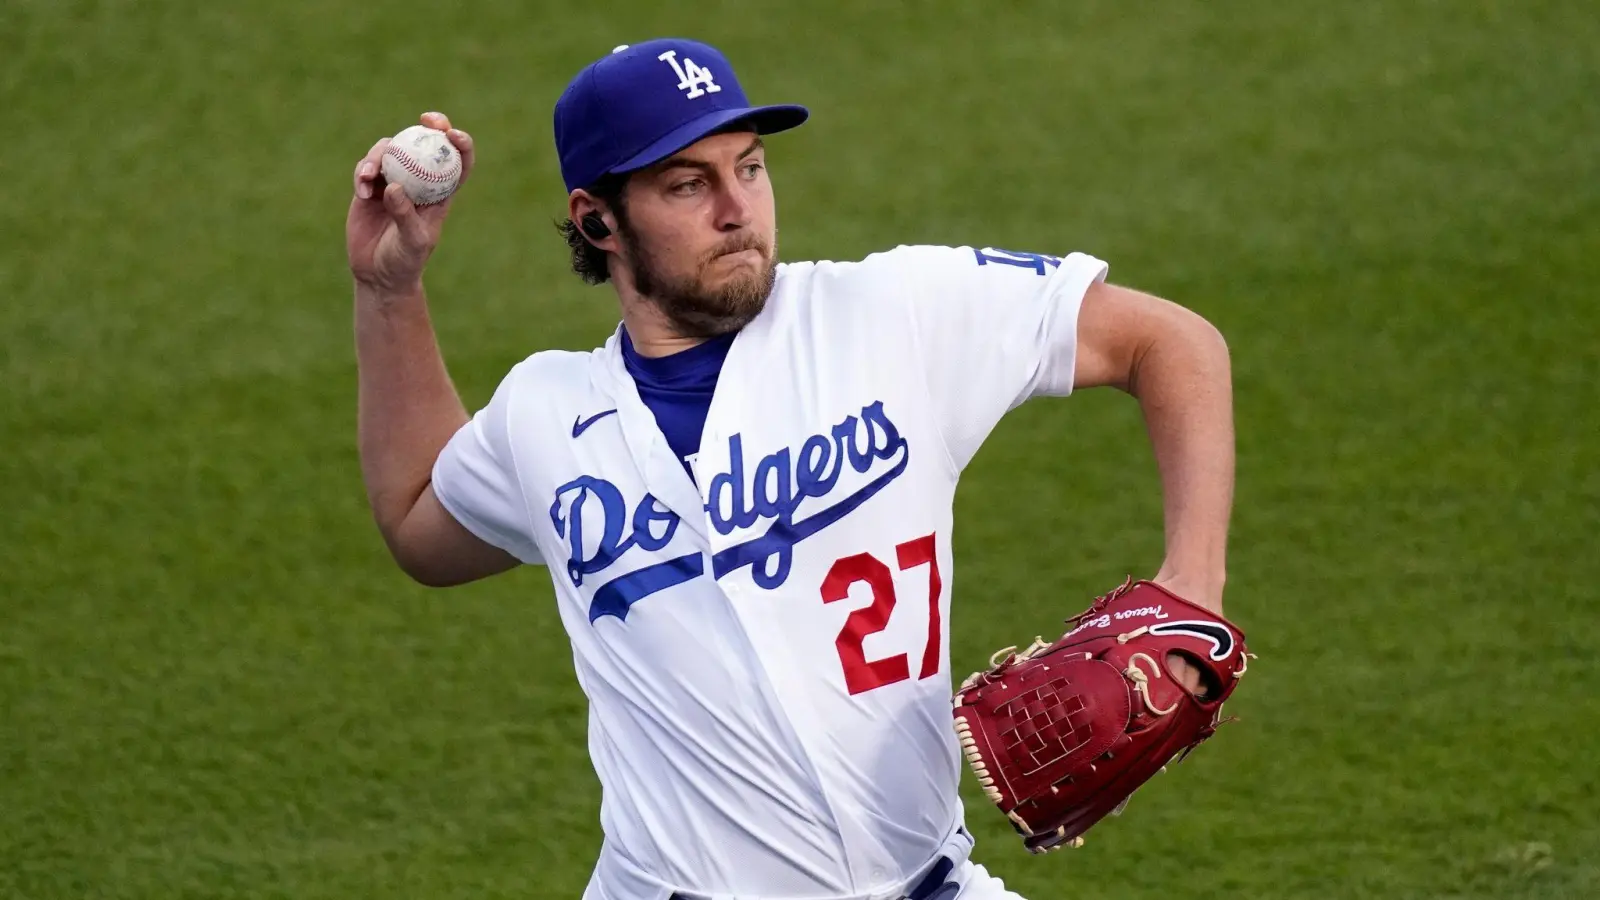 Trevor Bauer wird sexuelle Gewalt vorgeworfen - nun ziehen die Dodgers weitere Konsequenzen. (Foto: Mark J. Terrill/AP/dpa)